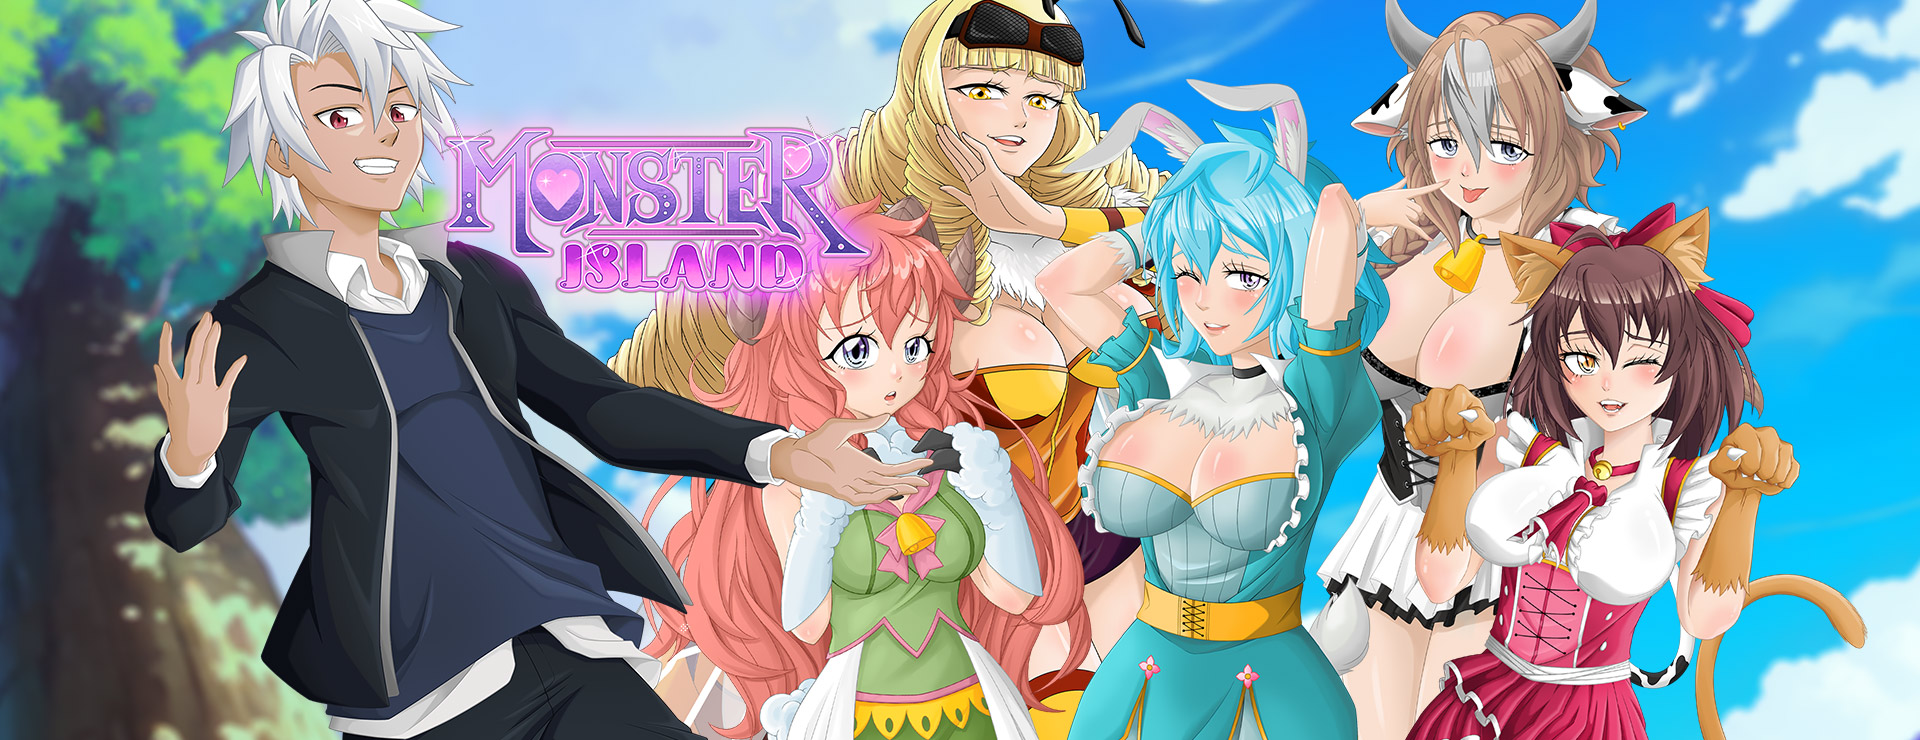 Monster Island - Zwanglos  Spiel